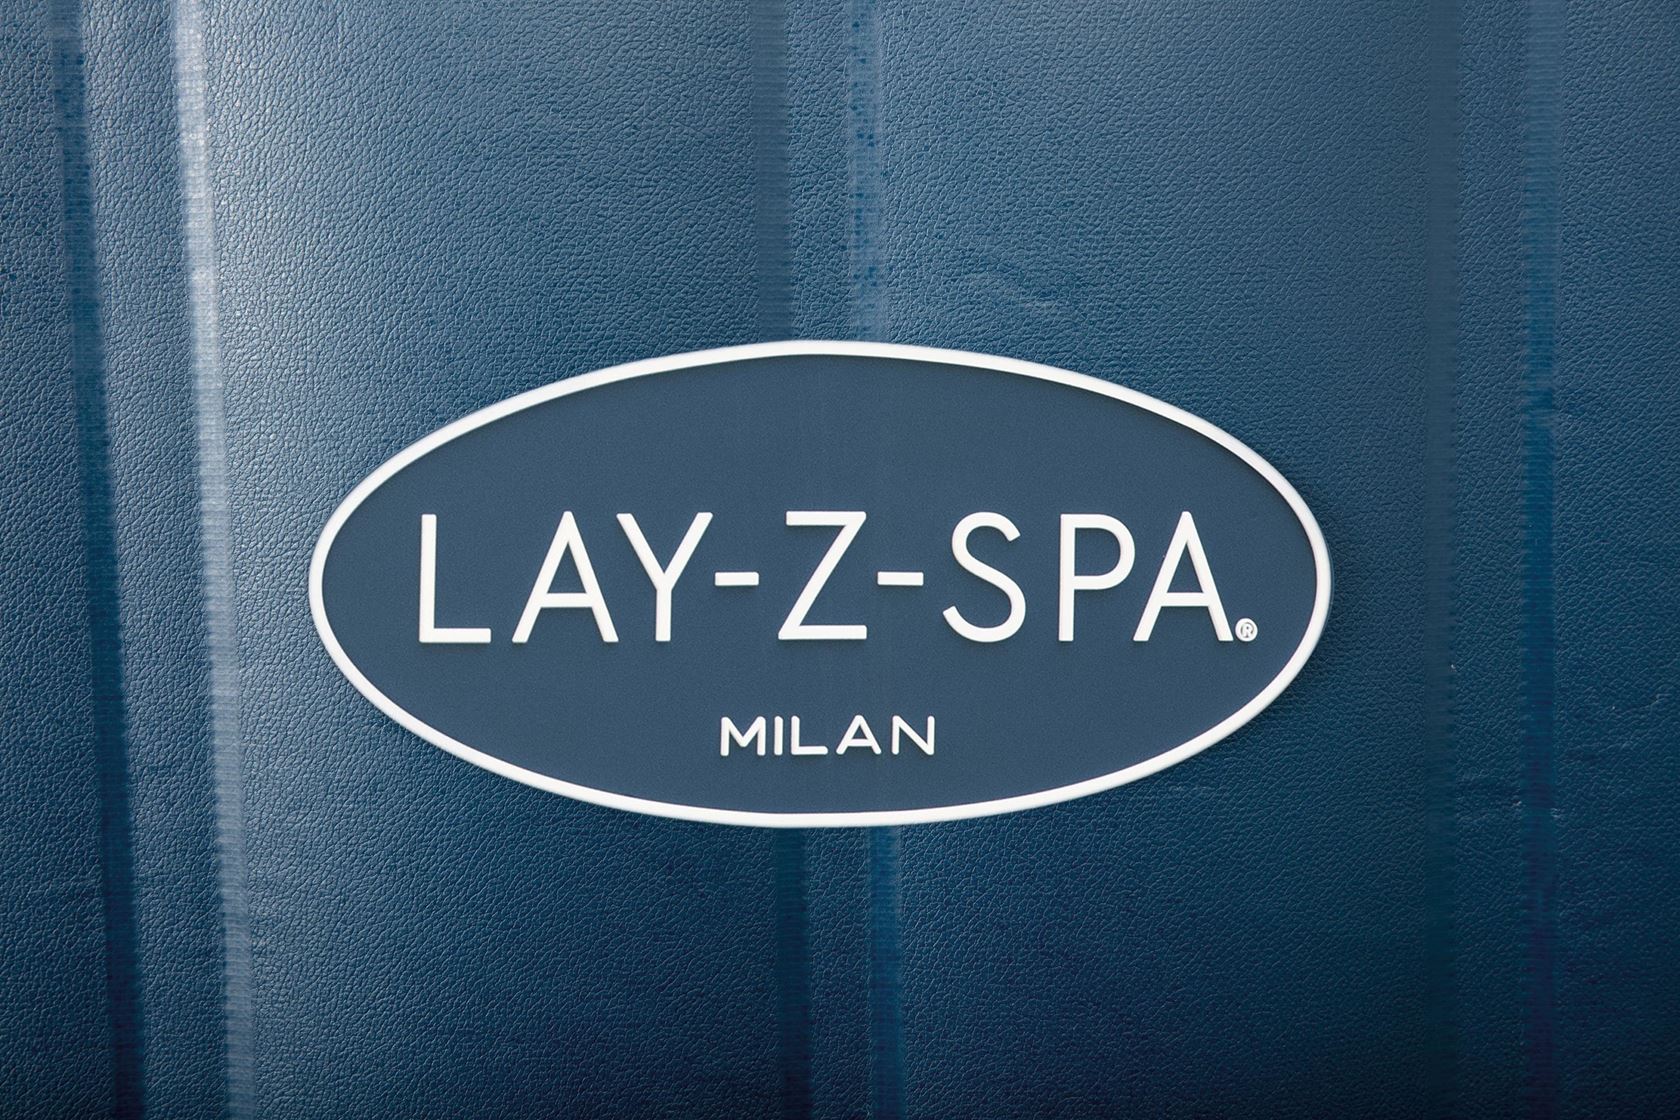 Bestway Lay-Z-Spa Milan Airjet Plus inflatable spa - 4-6 people